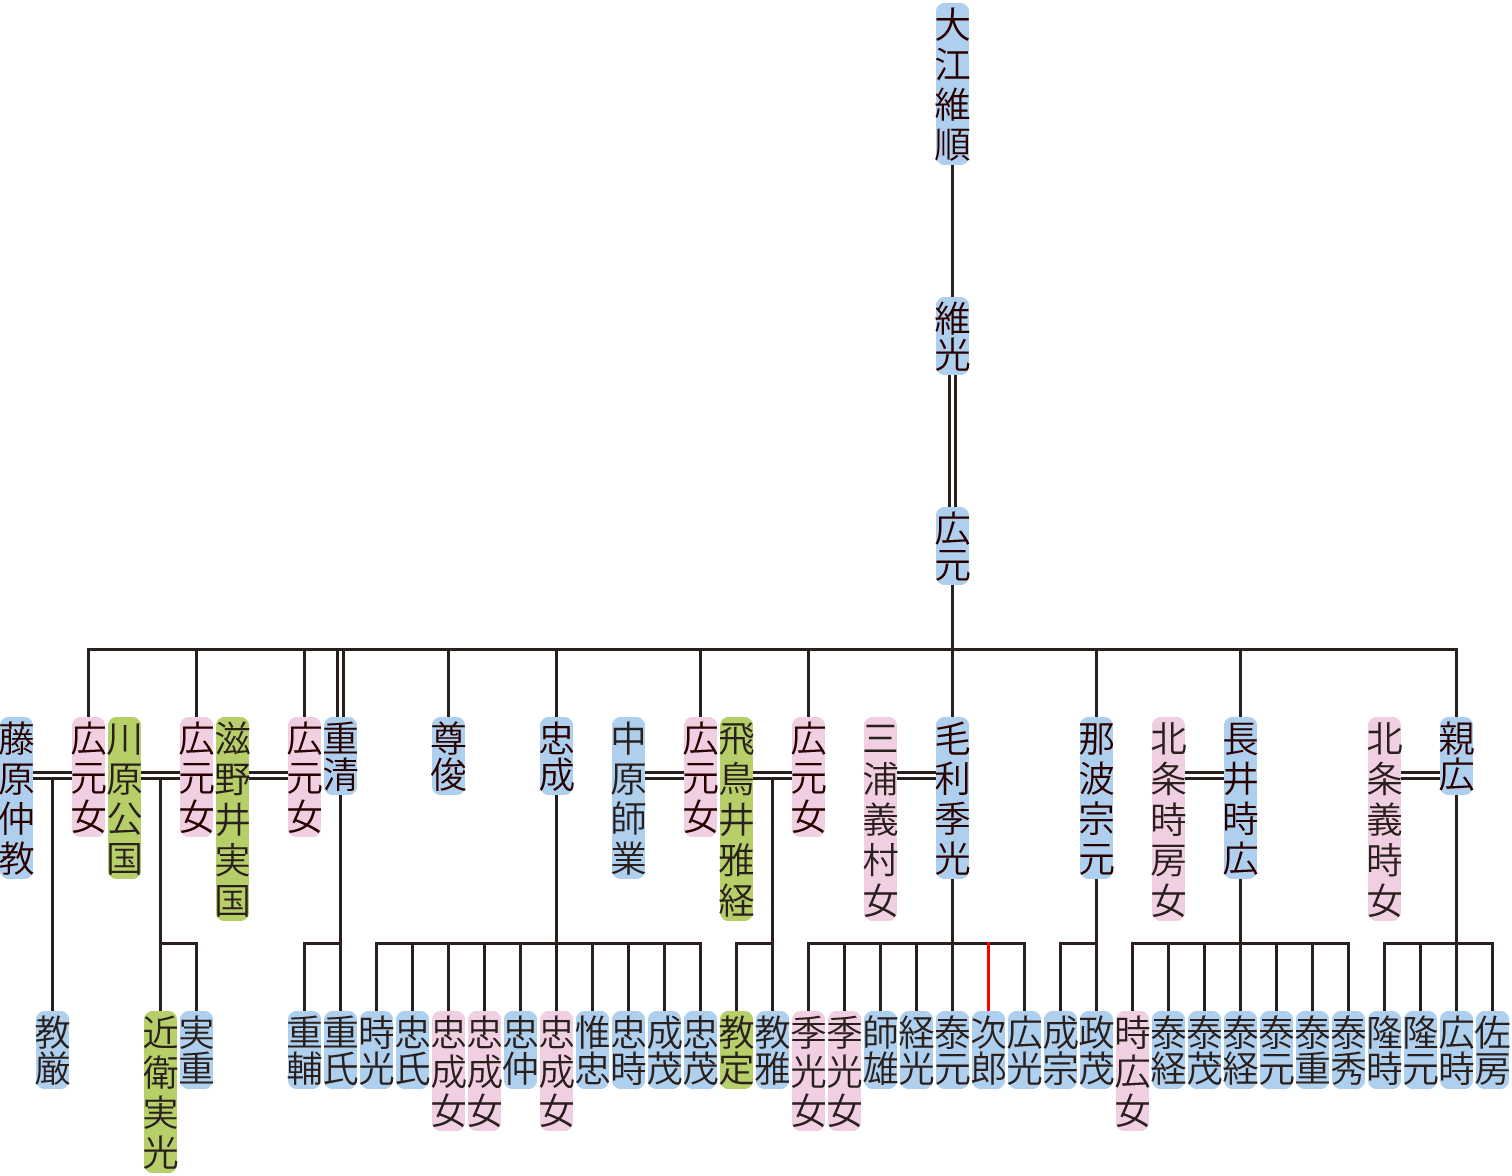 大江広元の系図